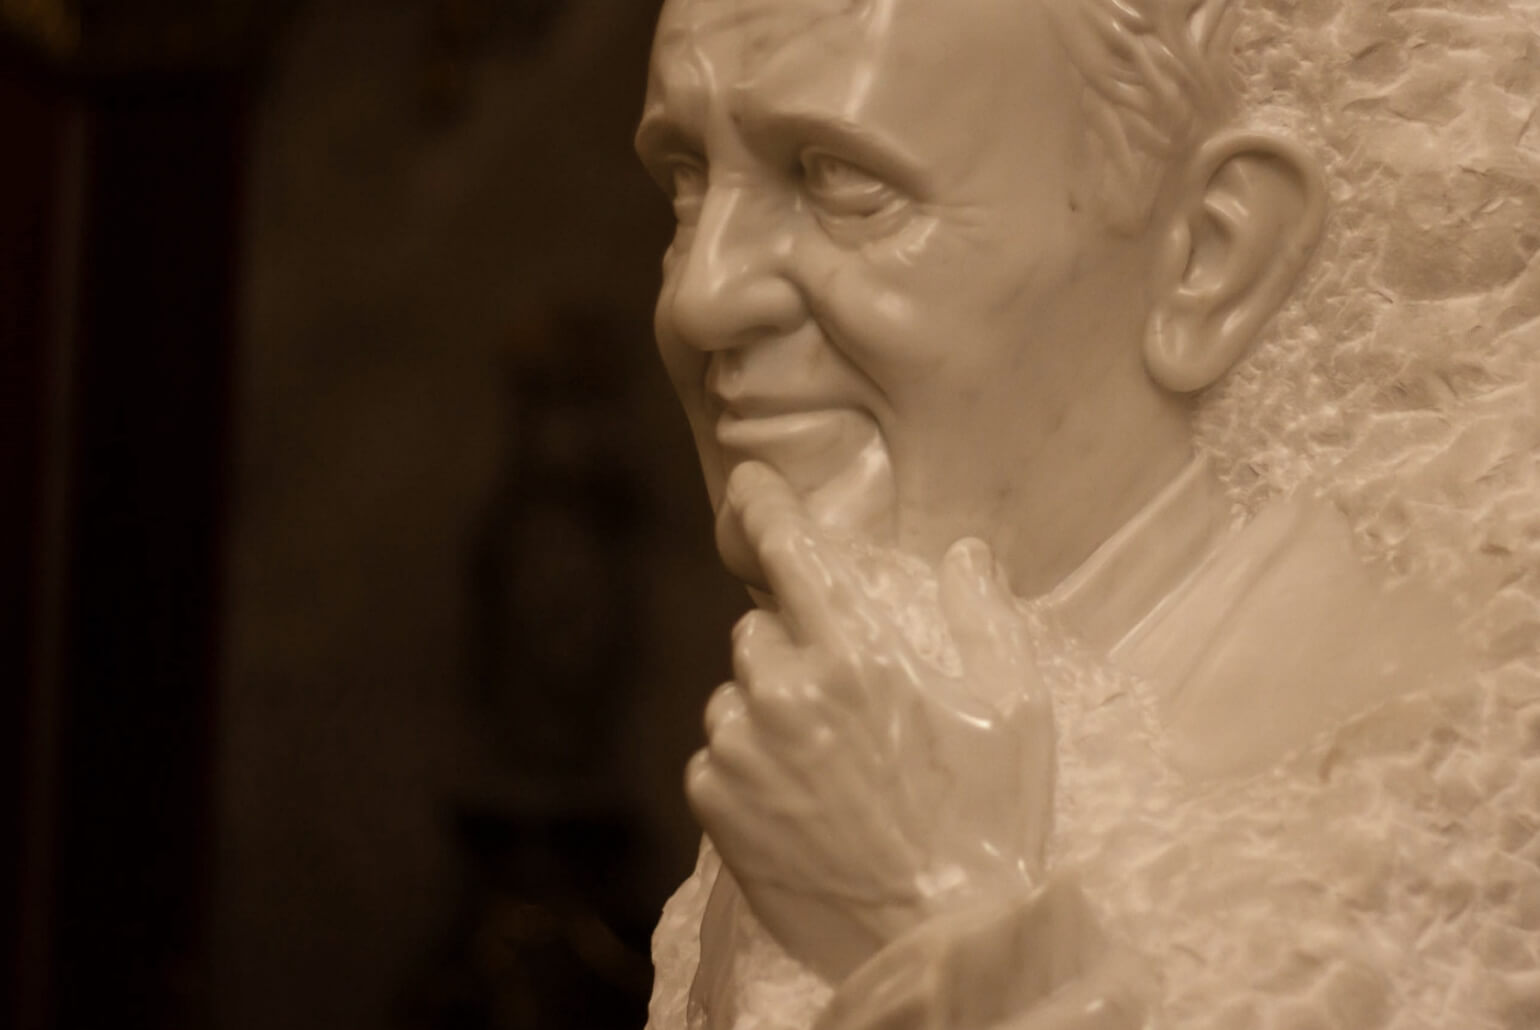 Ekskluzivni kiparski portreti papeža Frančiška